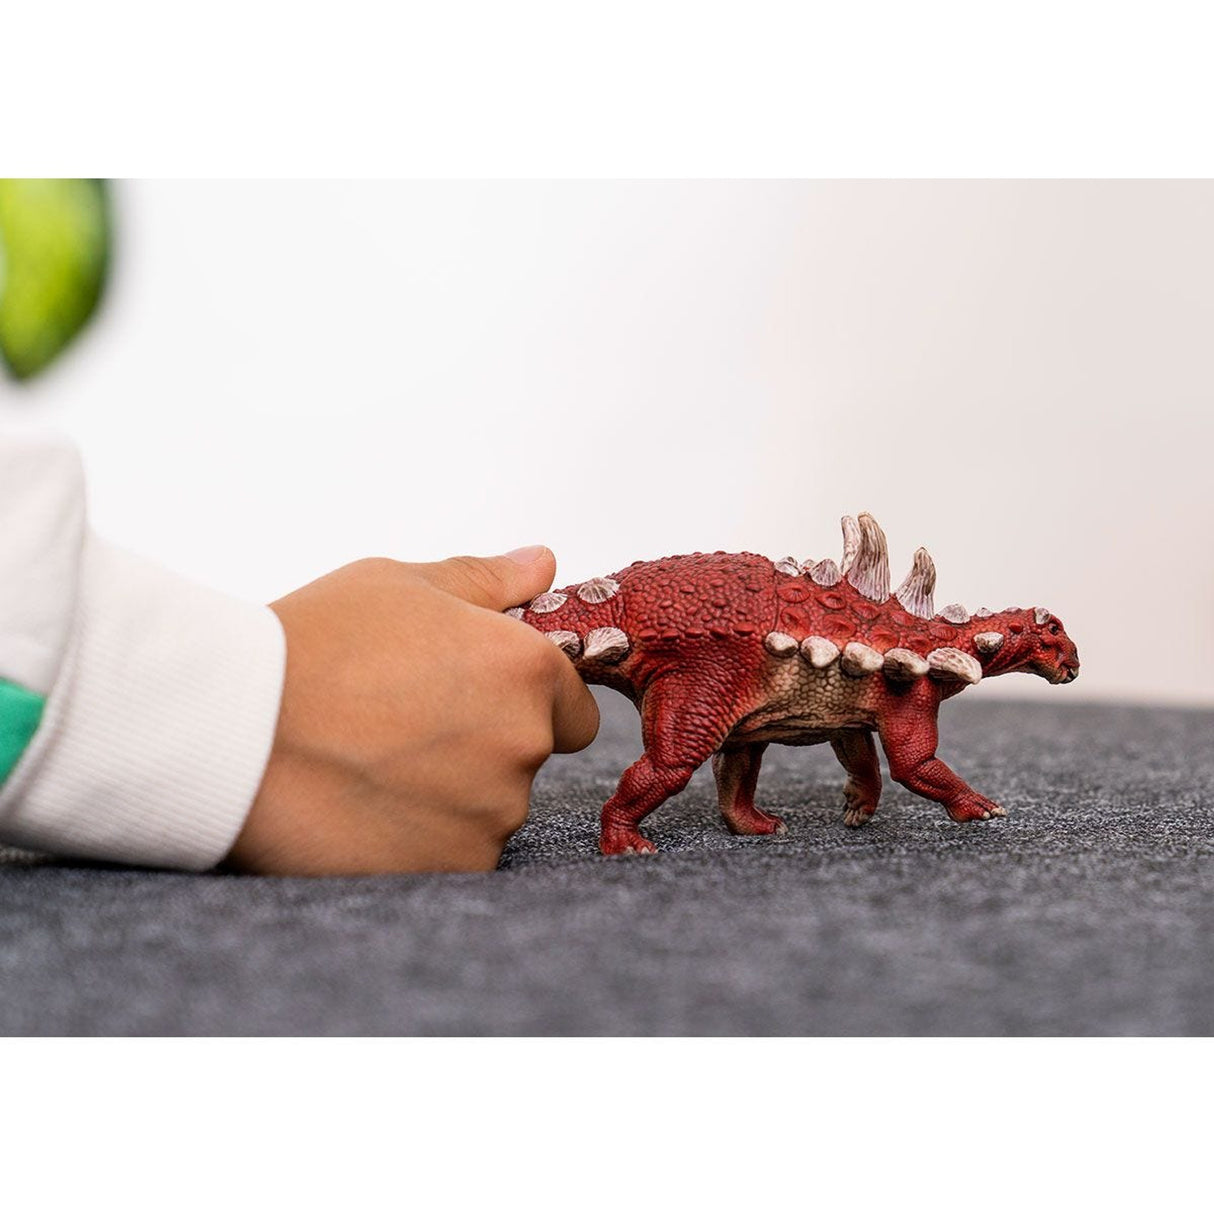 Schleich Gastonia Dinosaur Toy